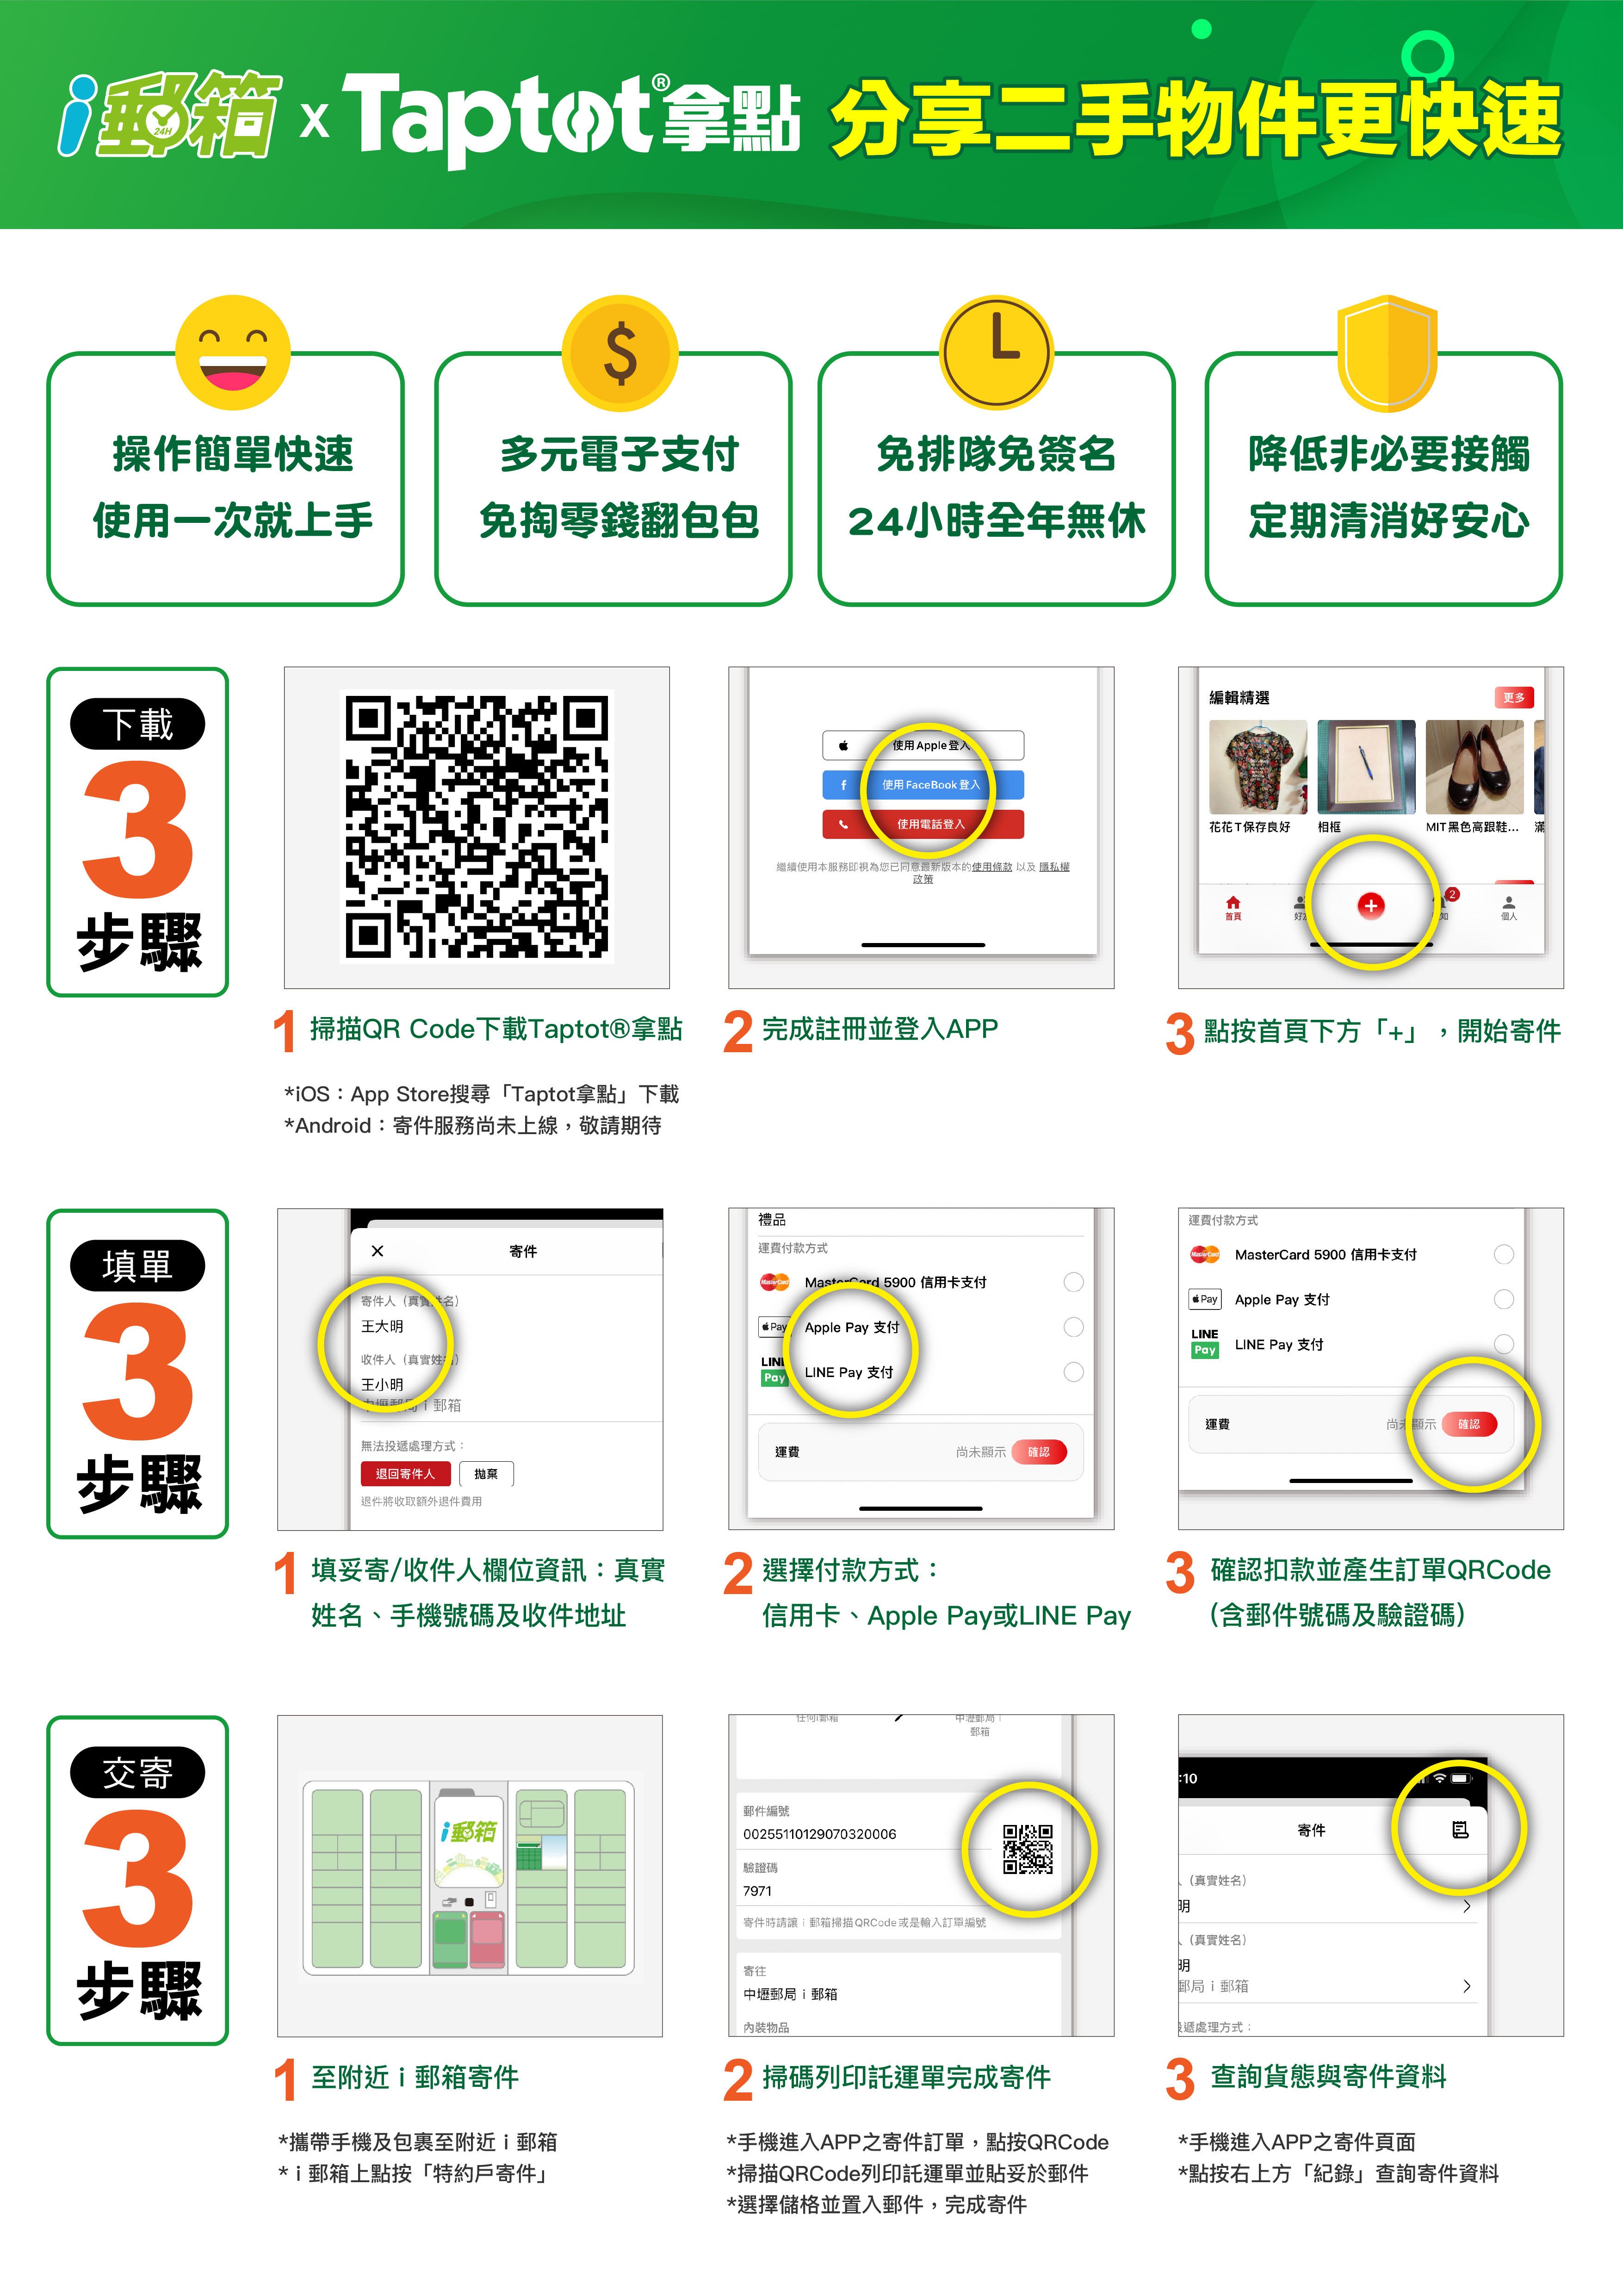 中華郵政與Taptot資源分享平臺合作  藉由i郵箱配送  推廣環保綠能理念